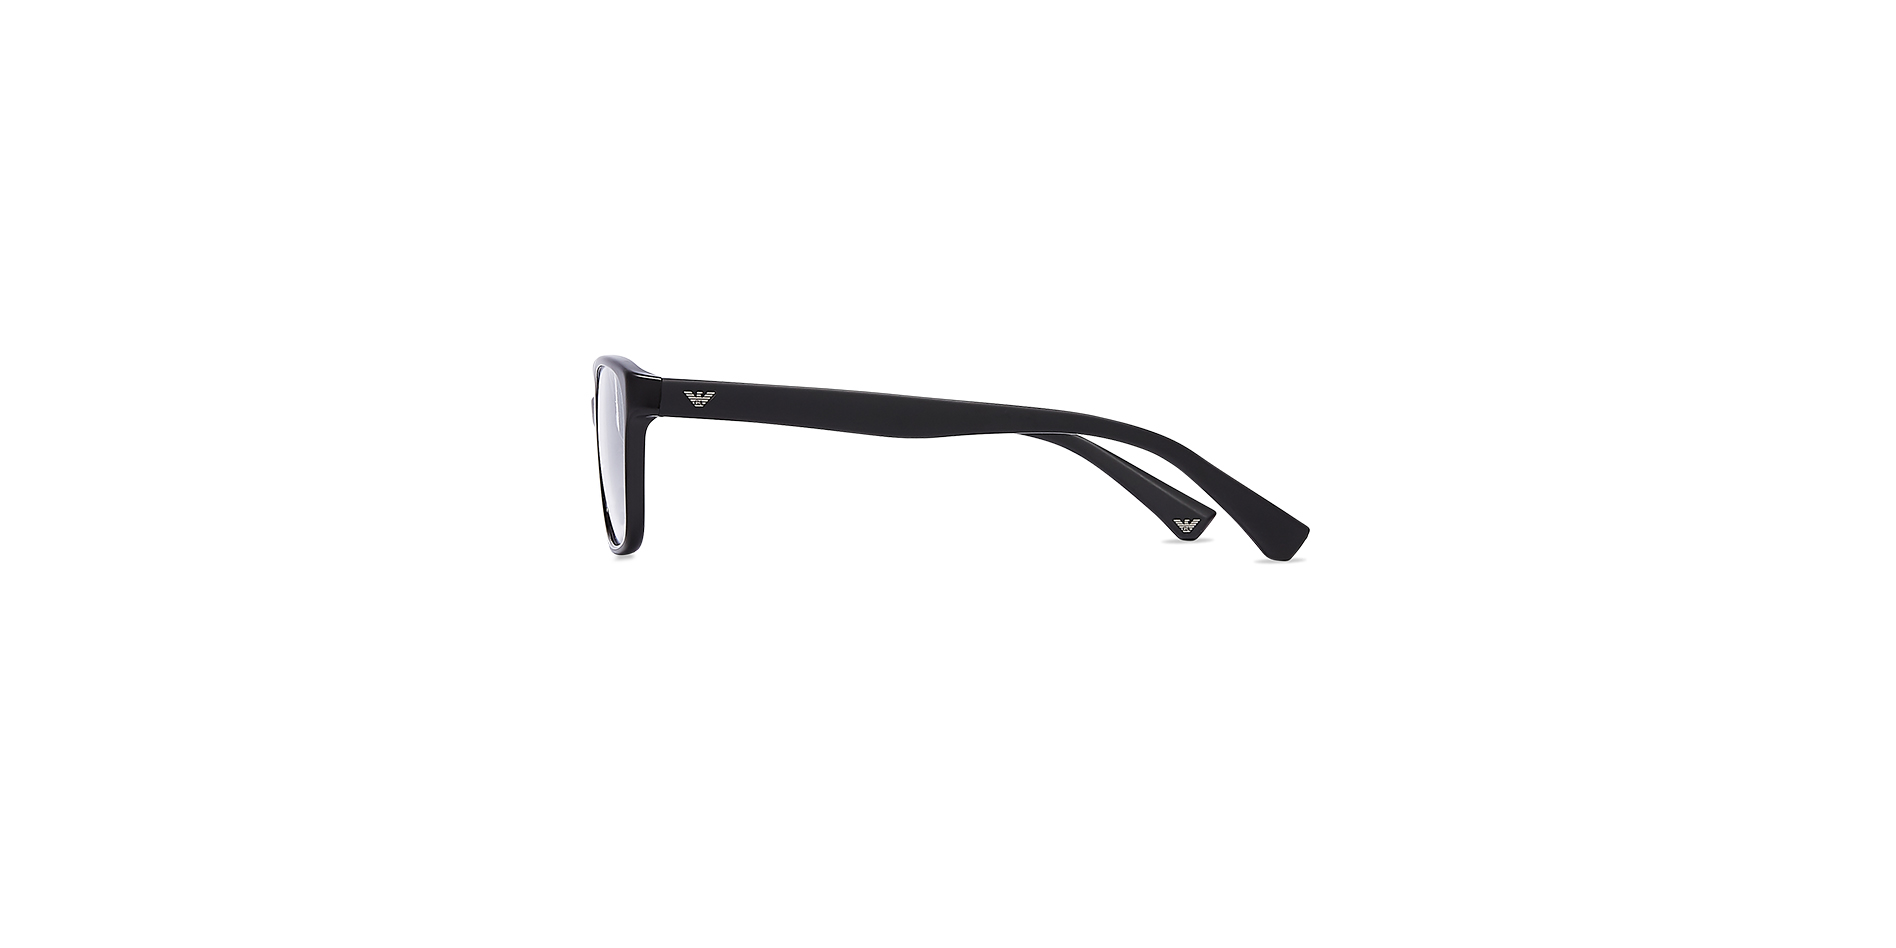 Modische Damen-Korrektionsbrille aus Kunststoff, Emporio Armani, EA 3060